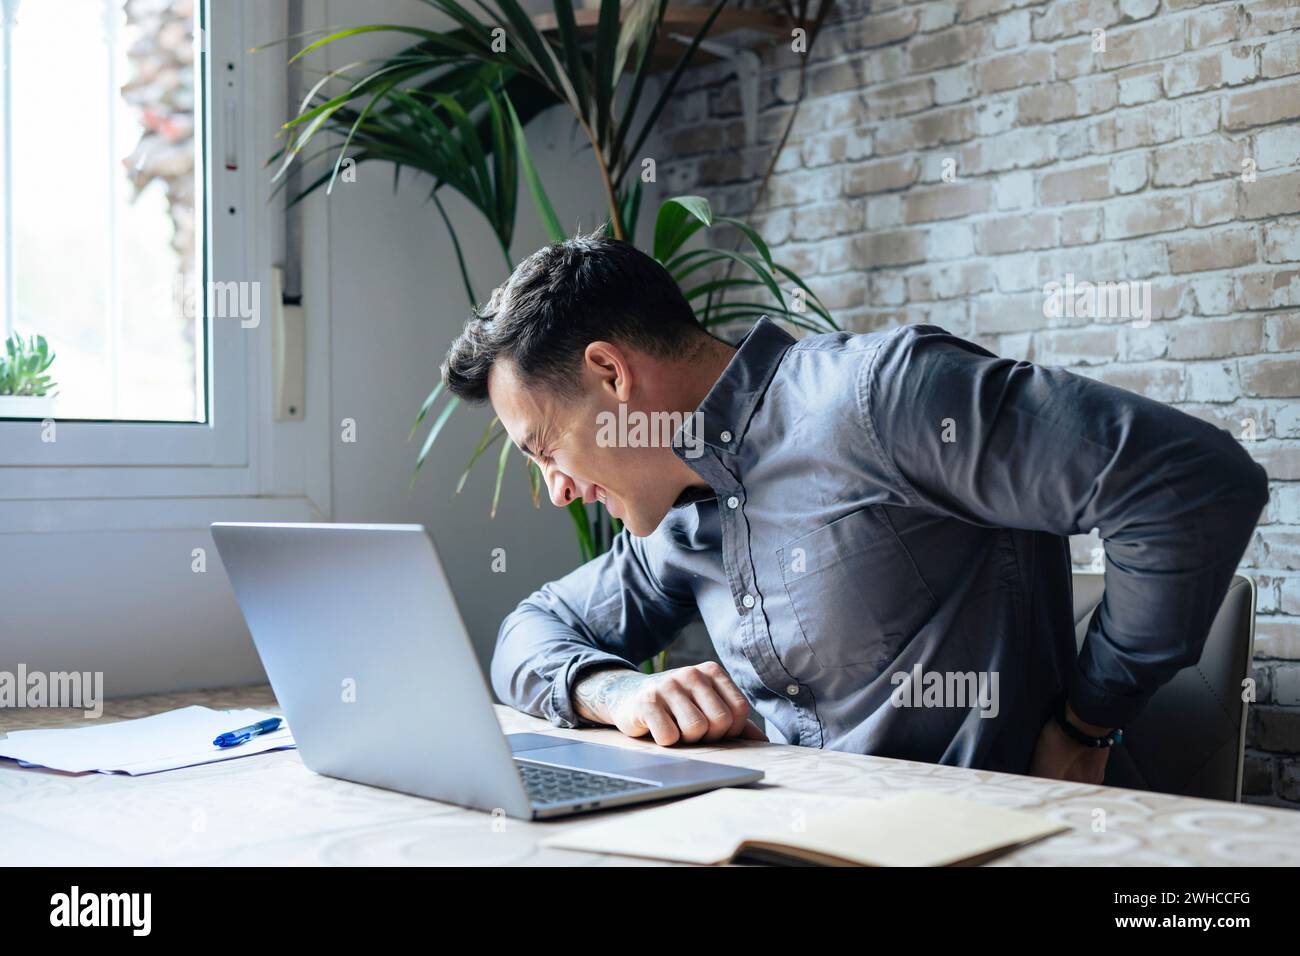 Malheureux homme caucasien assis au bureau dans le travail de bureau à domicile sur ordinateur portable souffrent de fatigue musculaire du bas du dos ou de spasme. Malsain mâle malsain ont mal au dos à cause d'une posture incorrecte. Concept de vie sédentaire. Banque D'Images